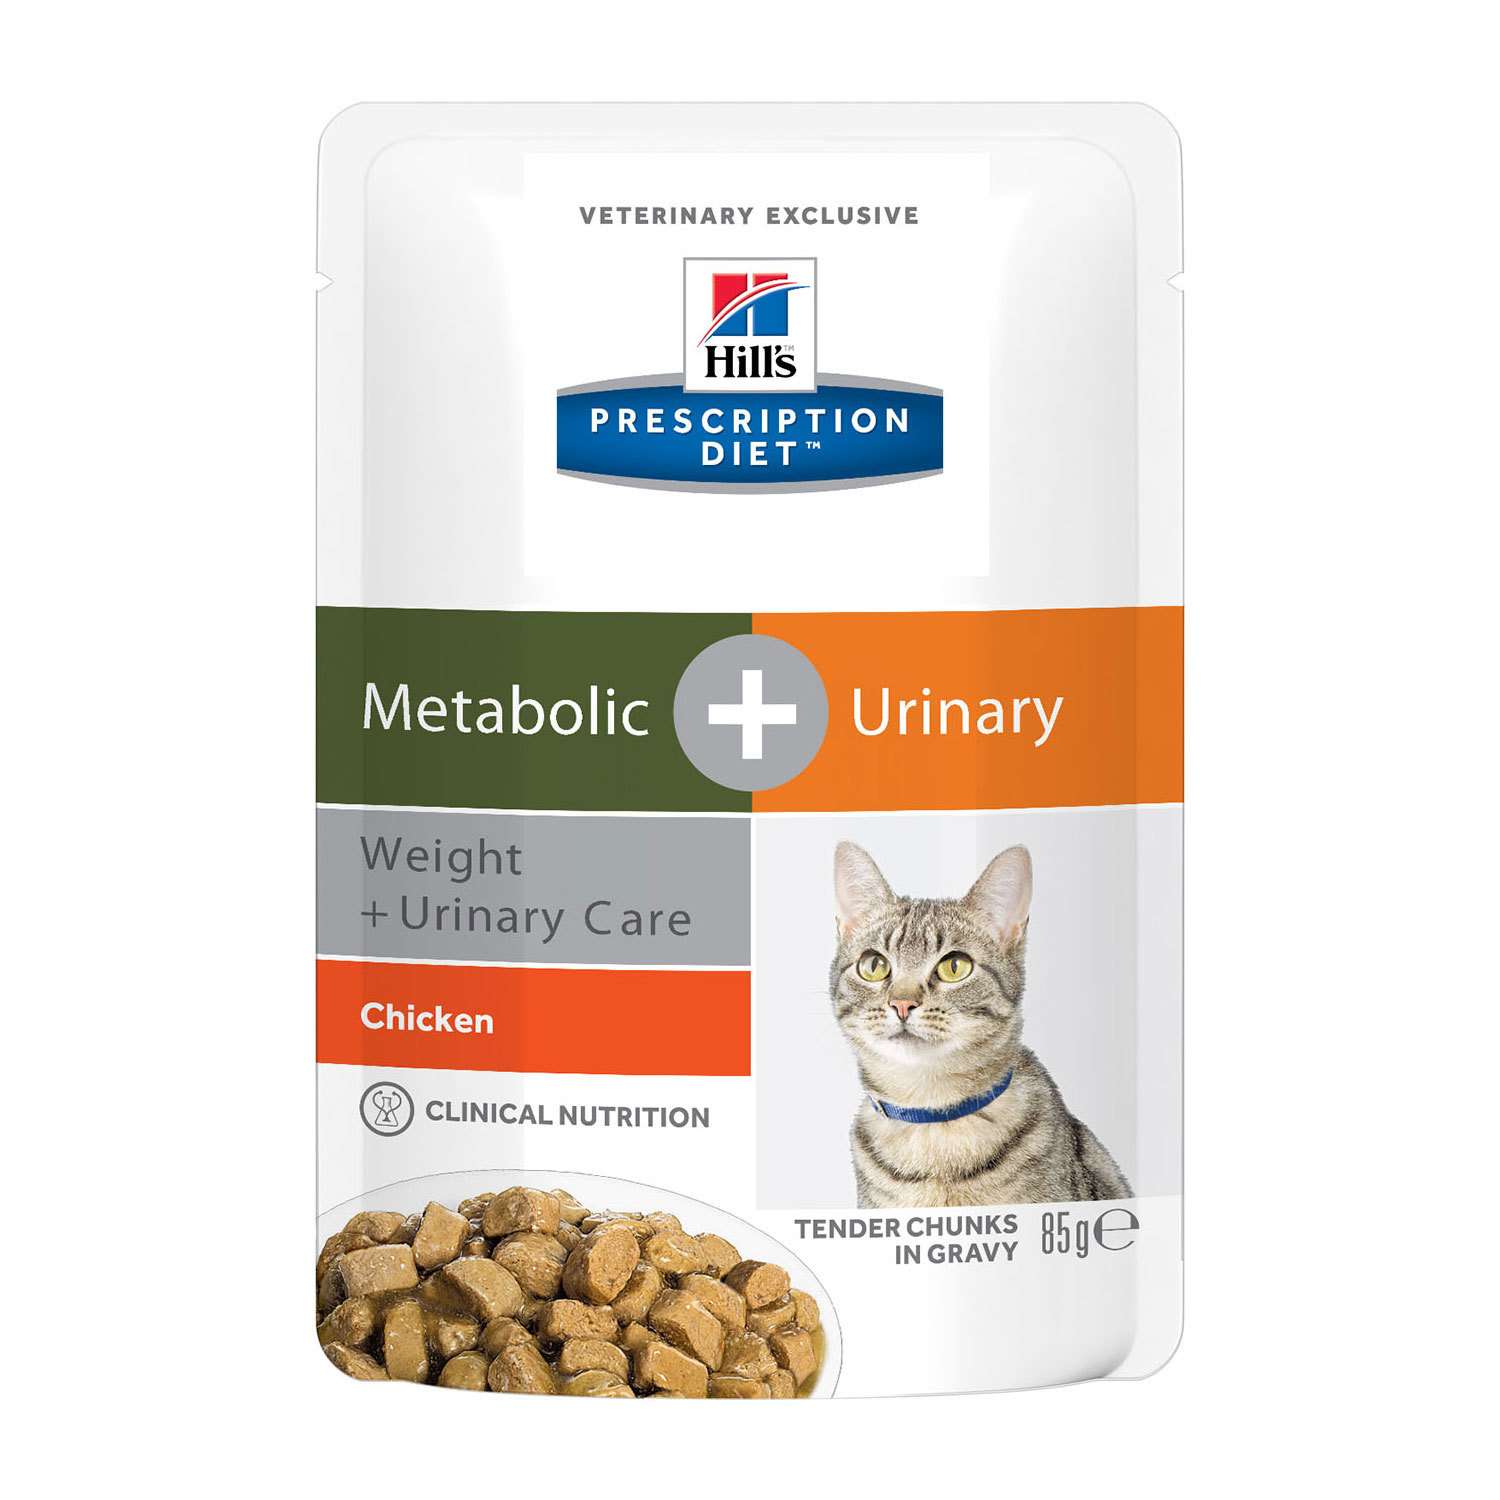 Корм для кошек HILLS 85г Prescription Diet Metabolic Urinary Weight Urinary Care для оптимального веса/при МКБ с курицей пауч - фото 1